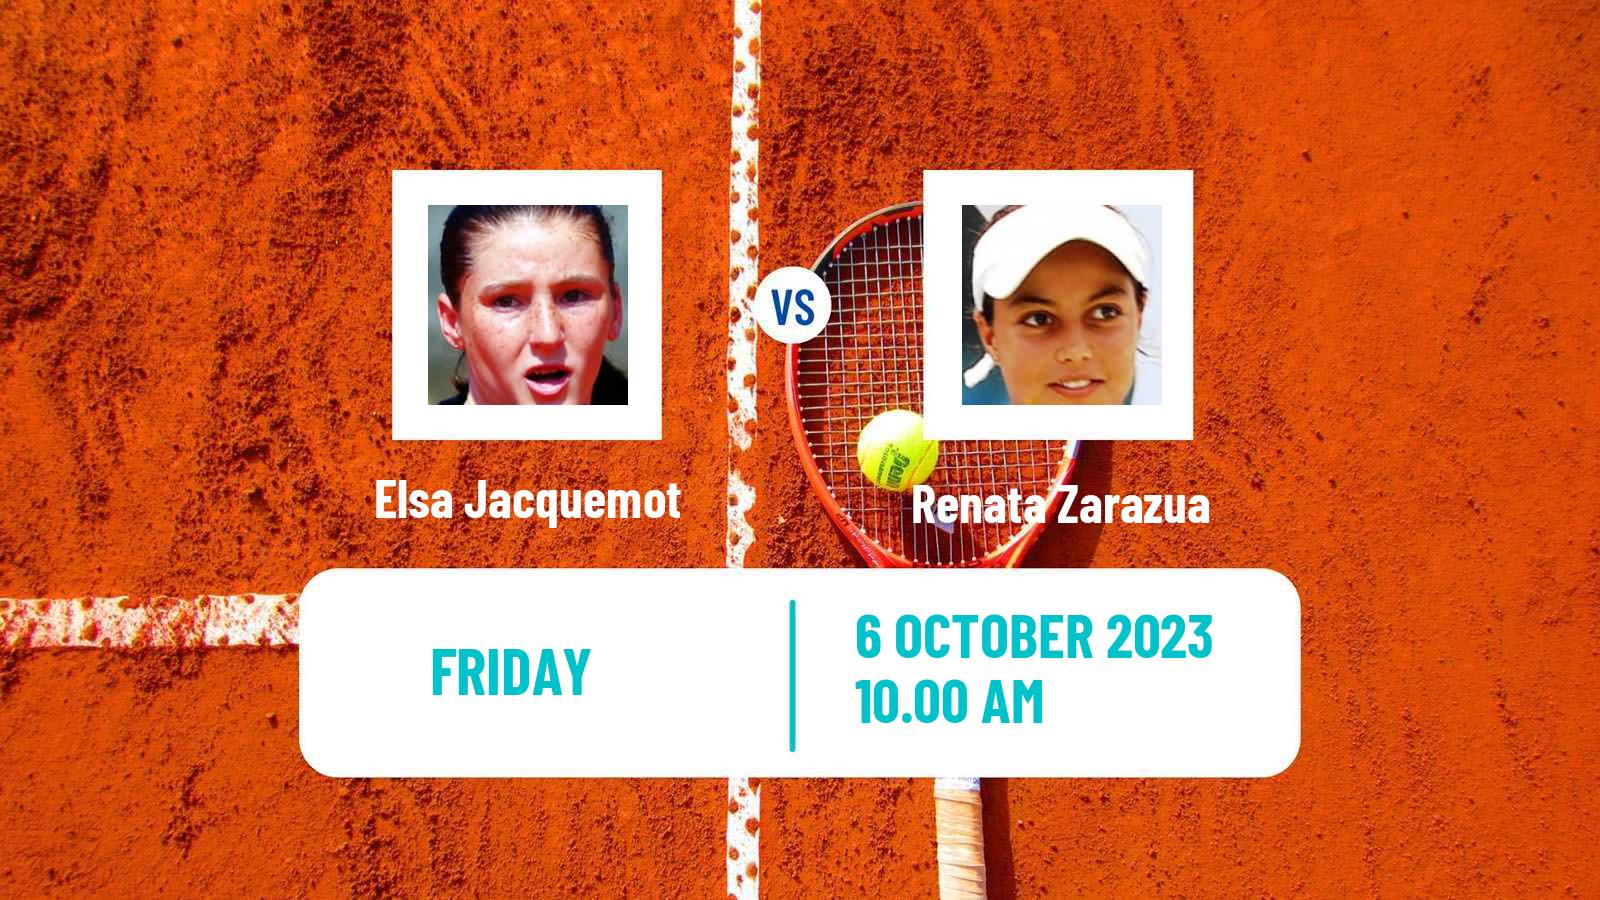 Tennis ITF W60 Rome Ga 2 Women Elsa Jacquemot - Renata Zarazua